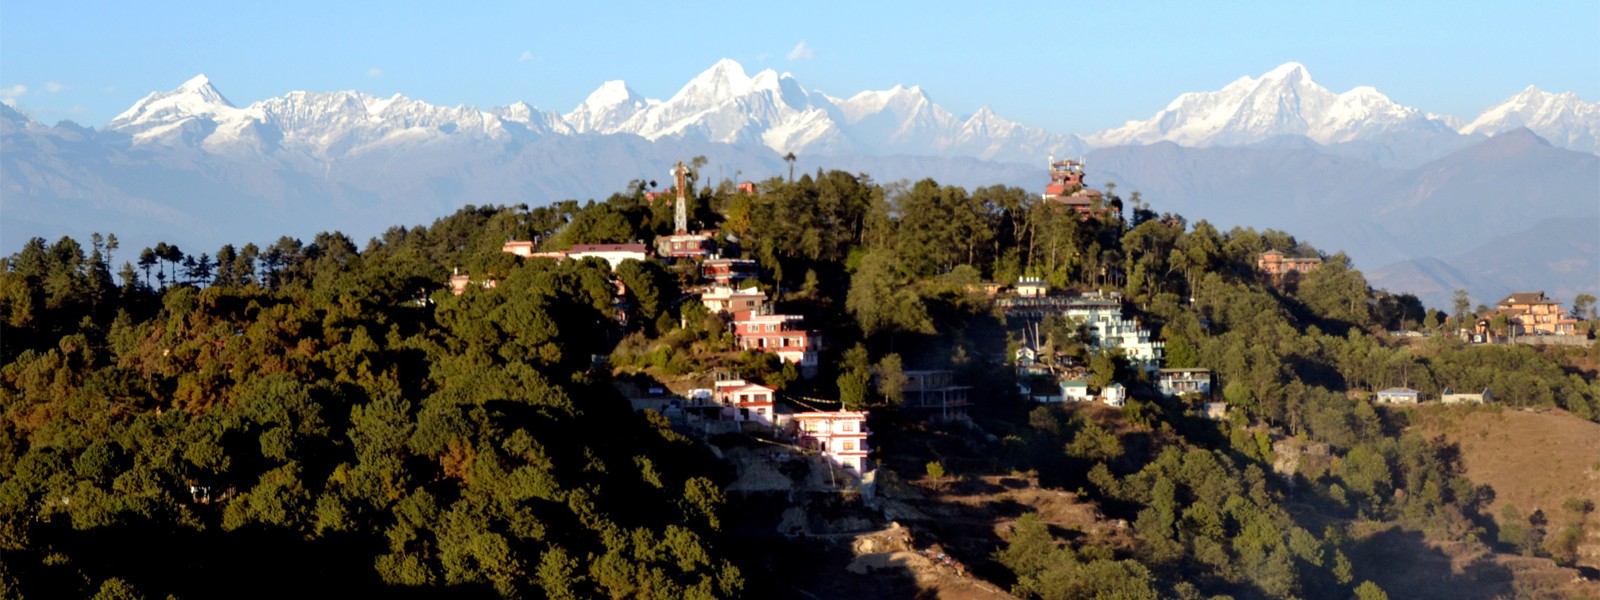 Shivapuri, Chisopani and Nagarkot Trekking